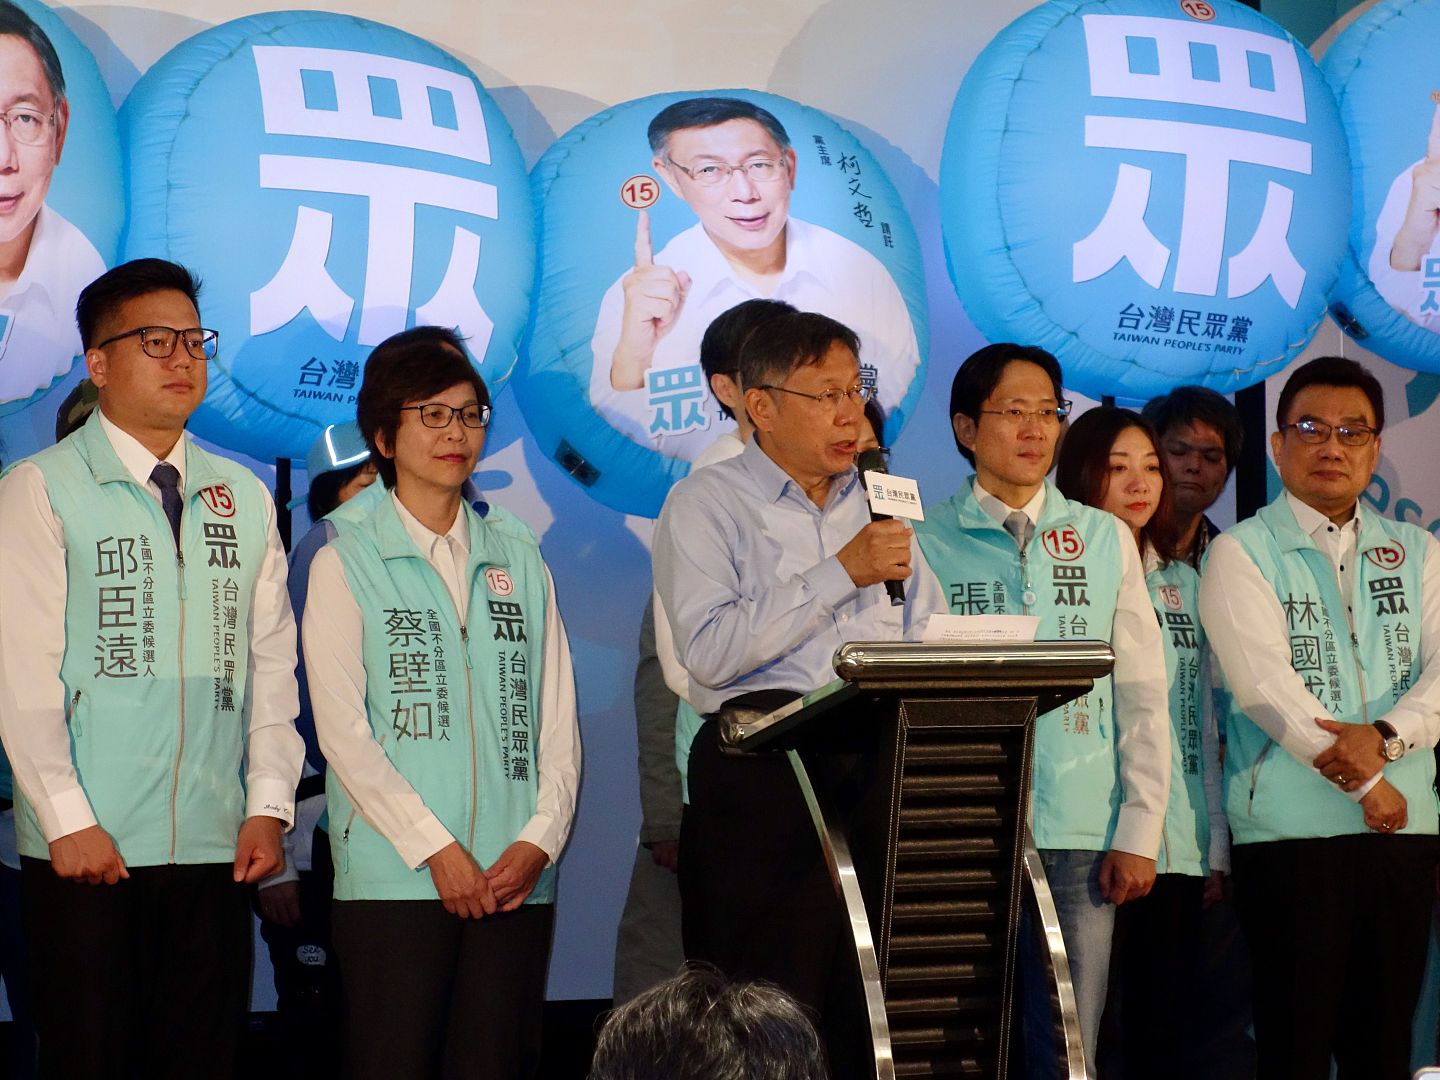 在2020年大选当选之夜，柯文哲除了感谢候选人、志工、选民给予该党的支持之外，更矢言一定会让台湾民众党团成为立法院中最强大的监督者，并将台北成功的治理经验与建立的新政治文化扩散到全台湾。（谭英瑛／多维新闻）